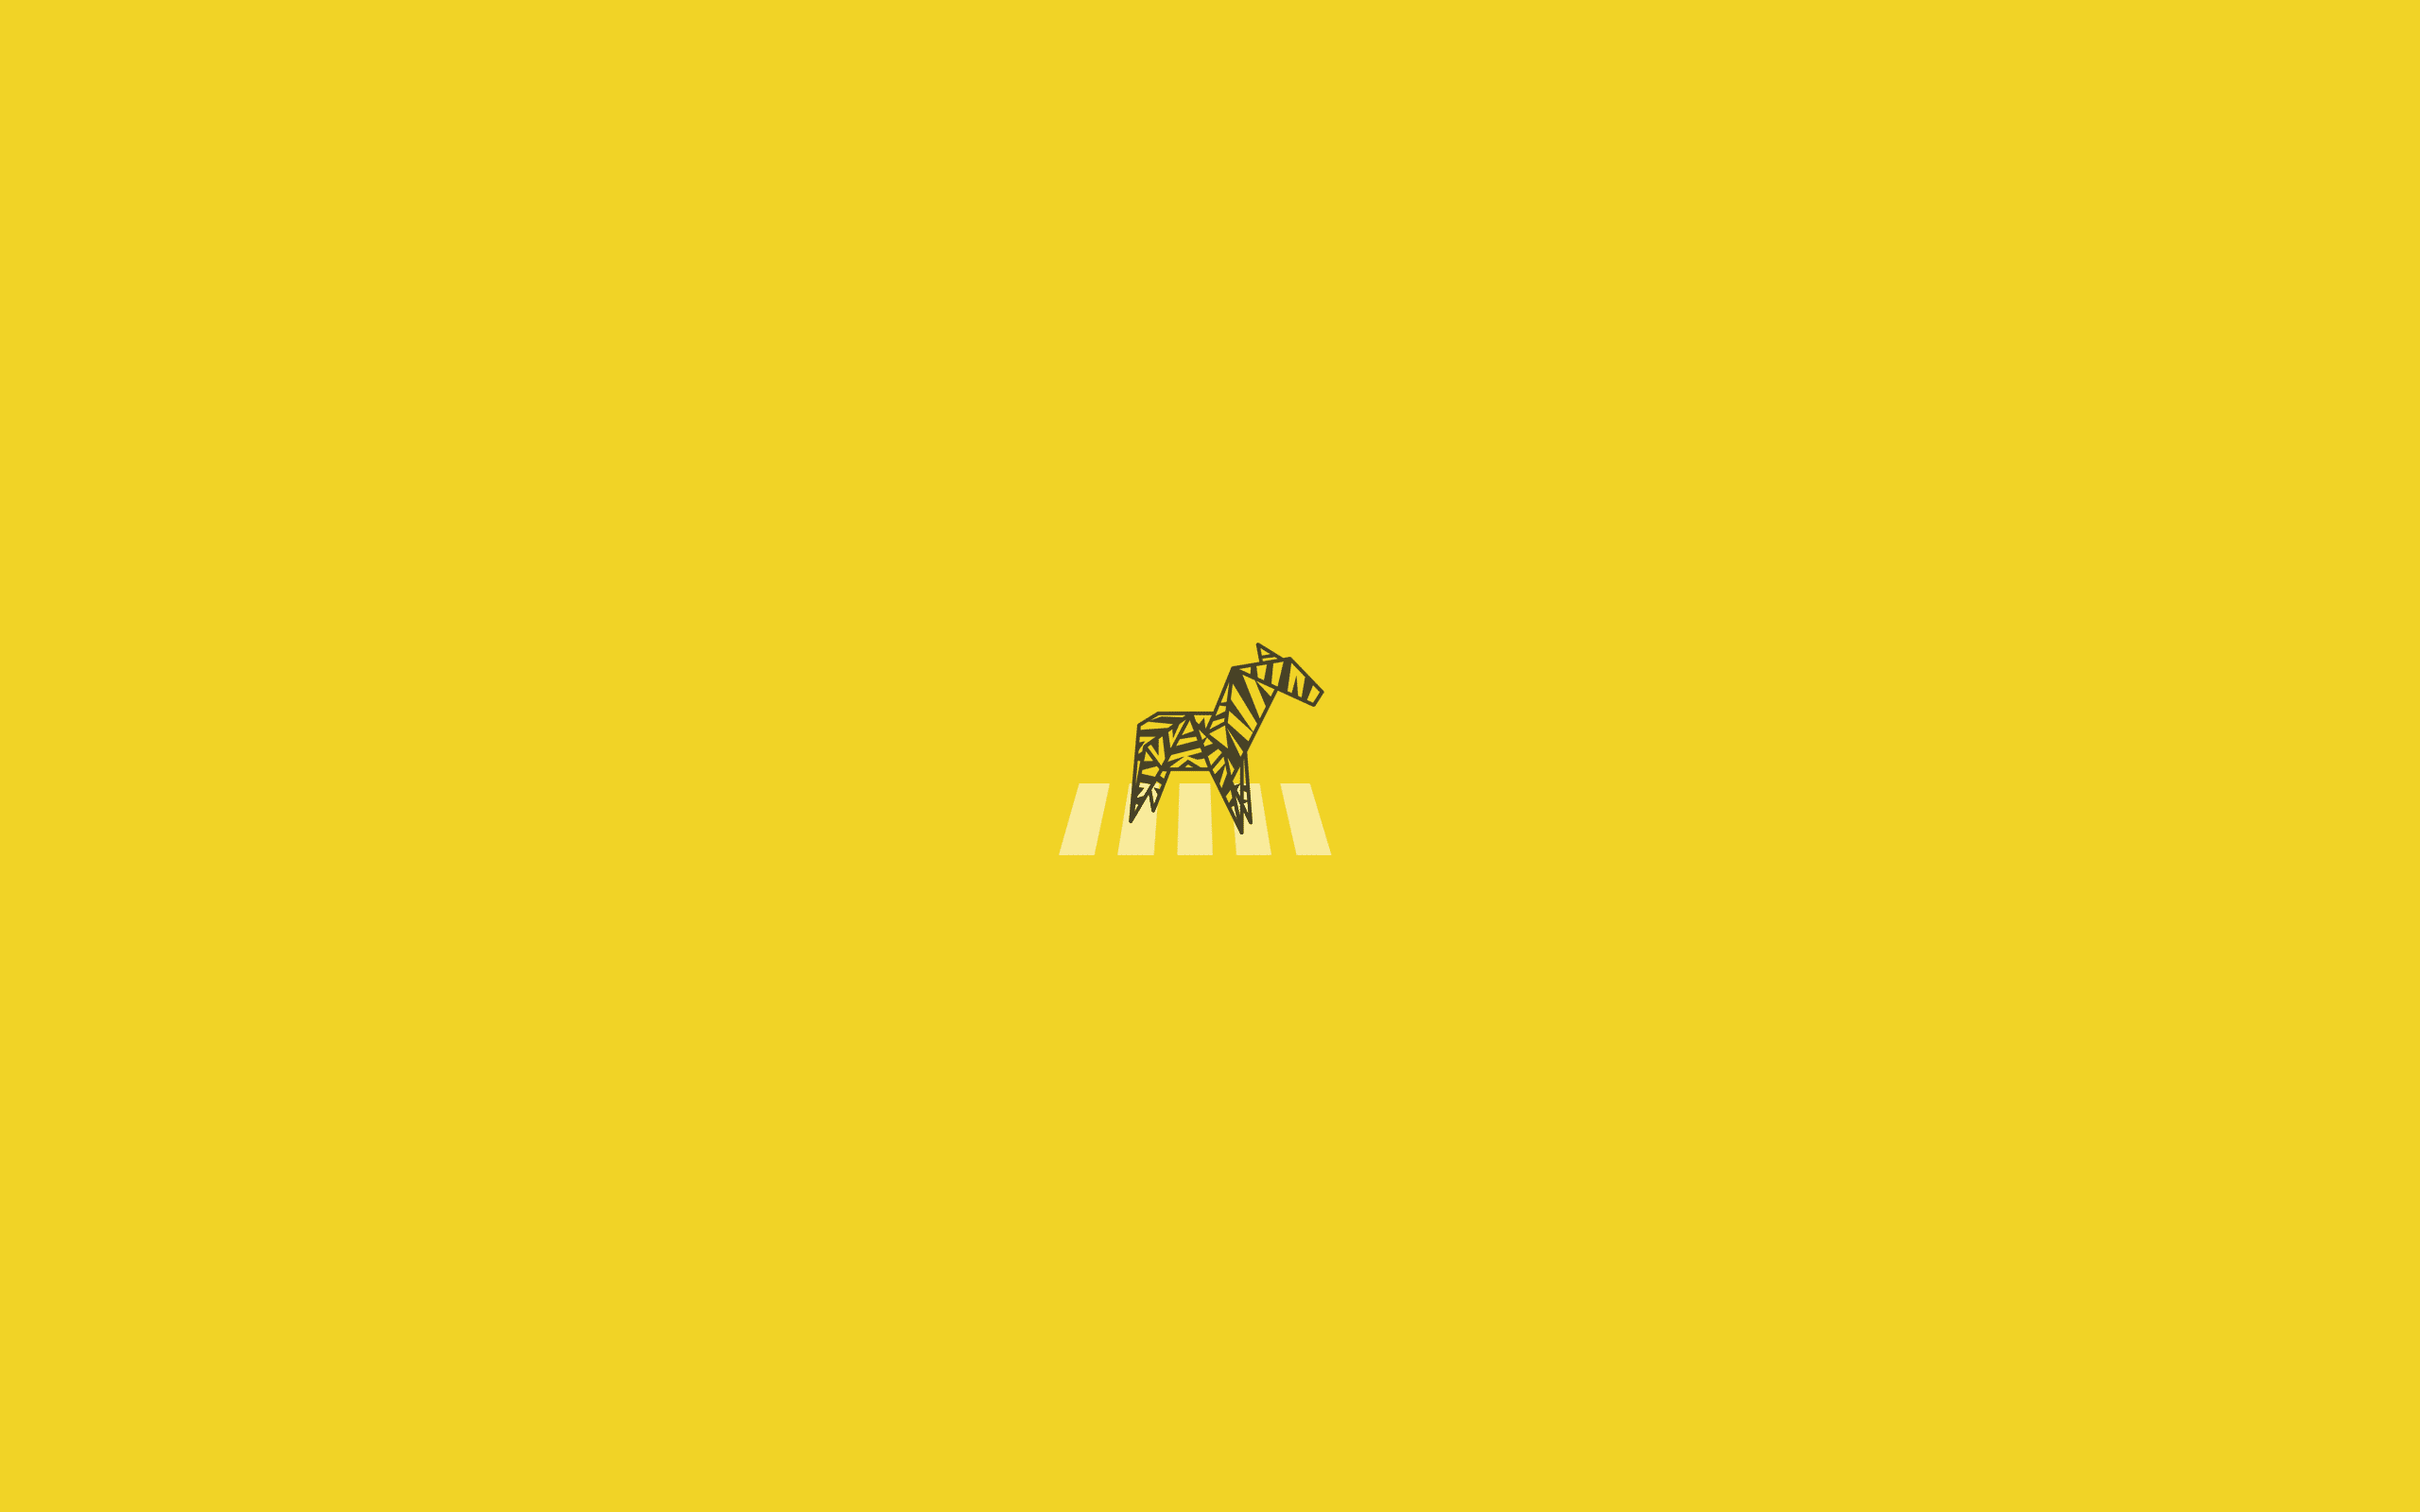 A giraffe on yellow background - Light yellow, pastel yellow